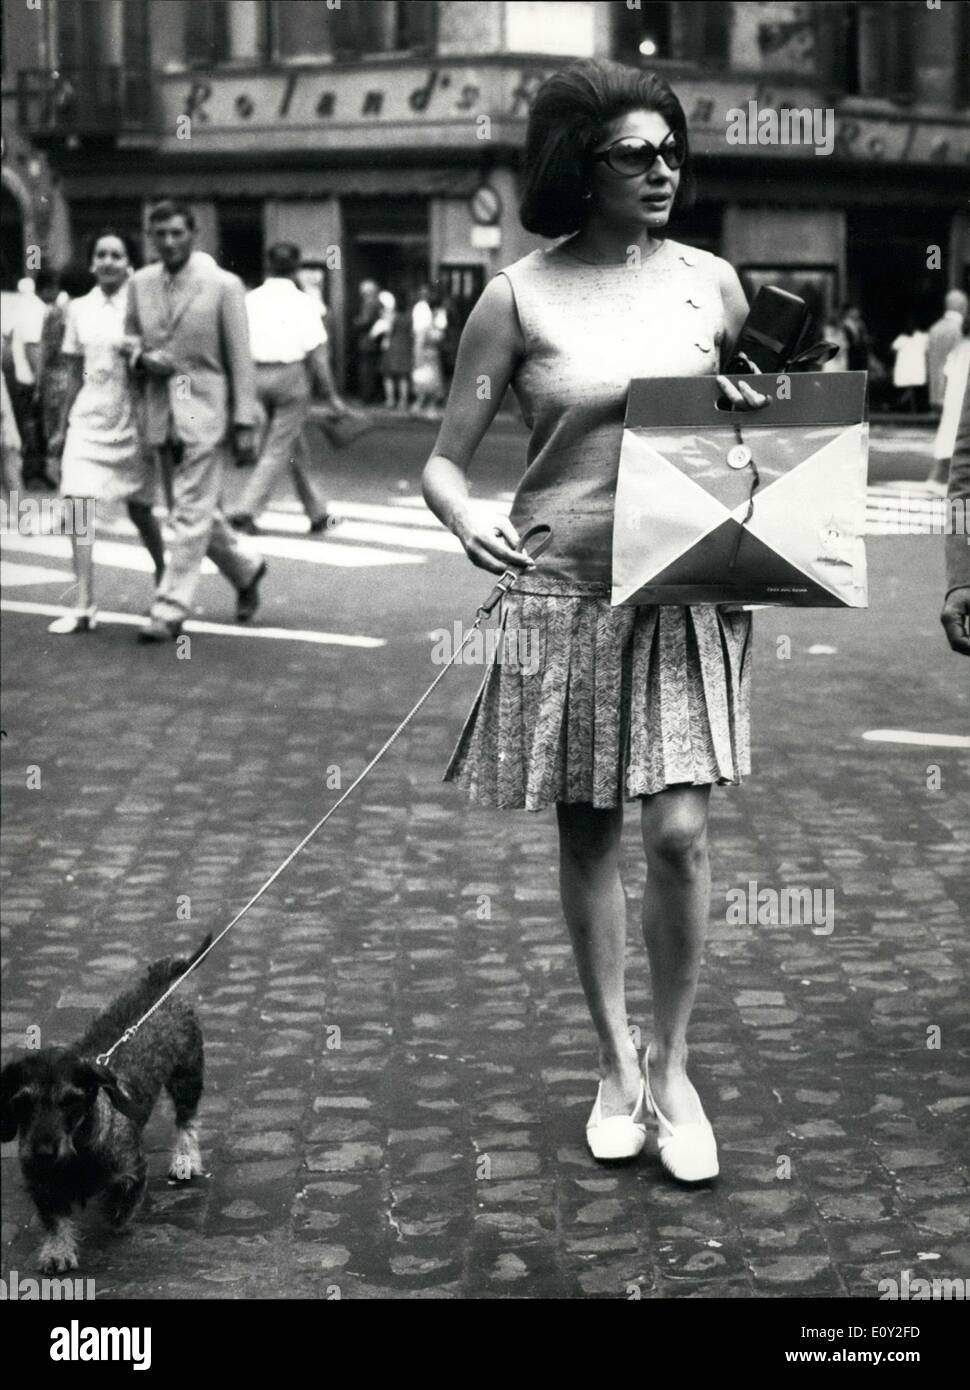 27. August 1968 - Soraya, immer traurig und allein, mit ihrer Freundin, ihrem Hund zu Fuß hier sehen. Nach ihrem letzten Flirt mit dem italienischen Regisseur Franco Indovina, die durch die Tatsache kompliziert wurde, dass er eine Frau und Kinder hatte, sein wählten die Prinzessin allein. Franco wird sicherlich sicherer sein. Stockfoto